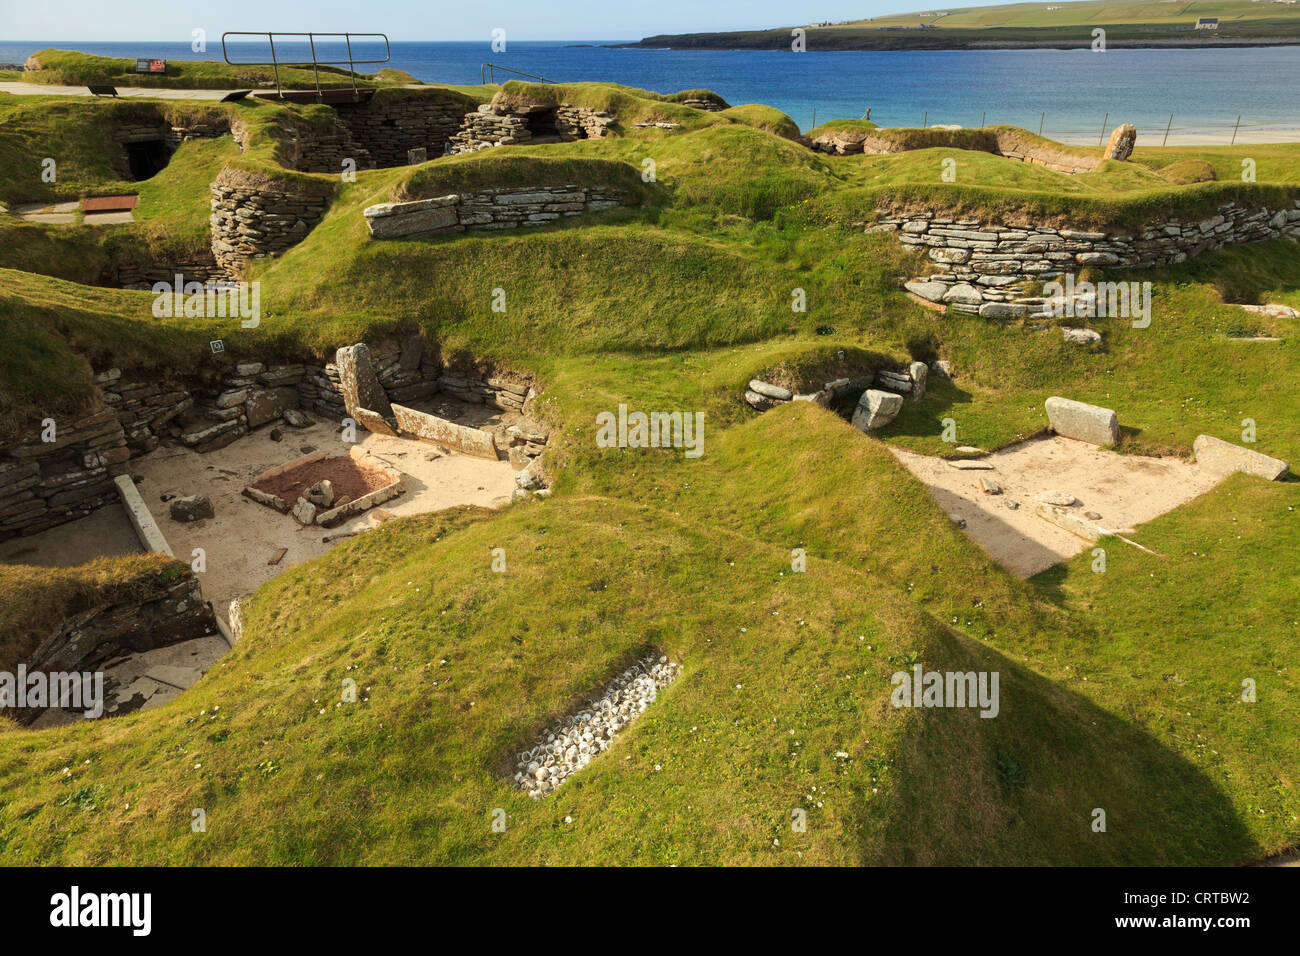 Les excavations d'anciennes maisons de village néolithique préhistorique à Skara Brae par baie de Skaill Orkney Islands Scotland UK Banque D'Images